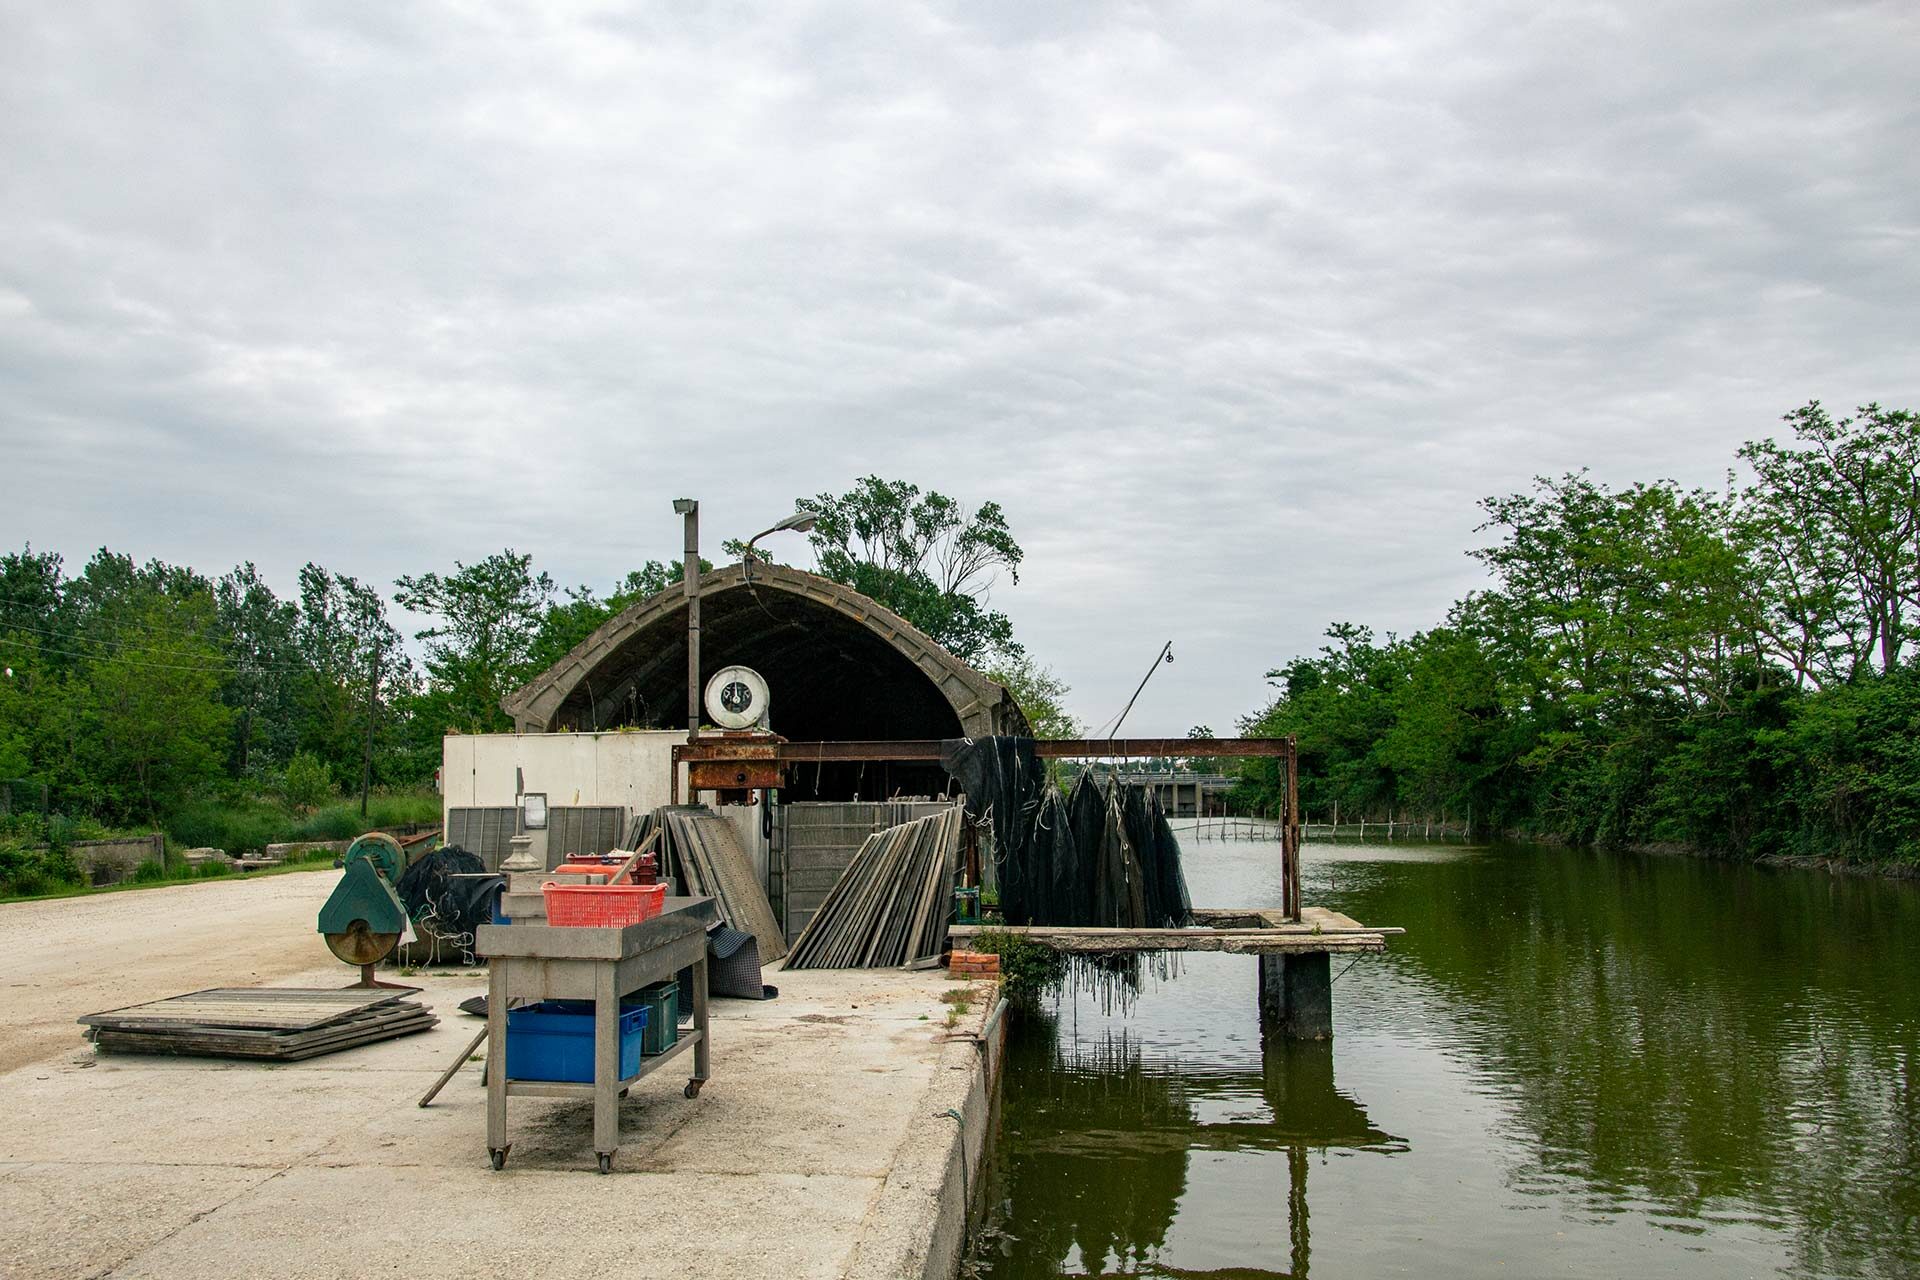 Die kleine Fischerhütte direkt am Kanal ist der ideale Ausgangsort für unsere Bootstour.